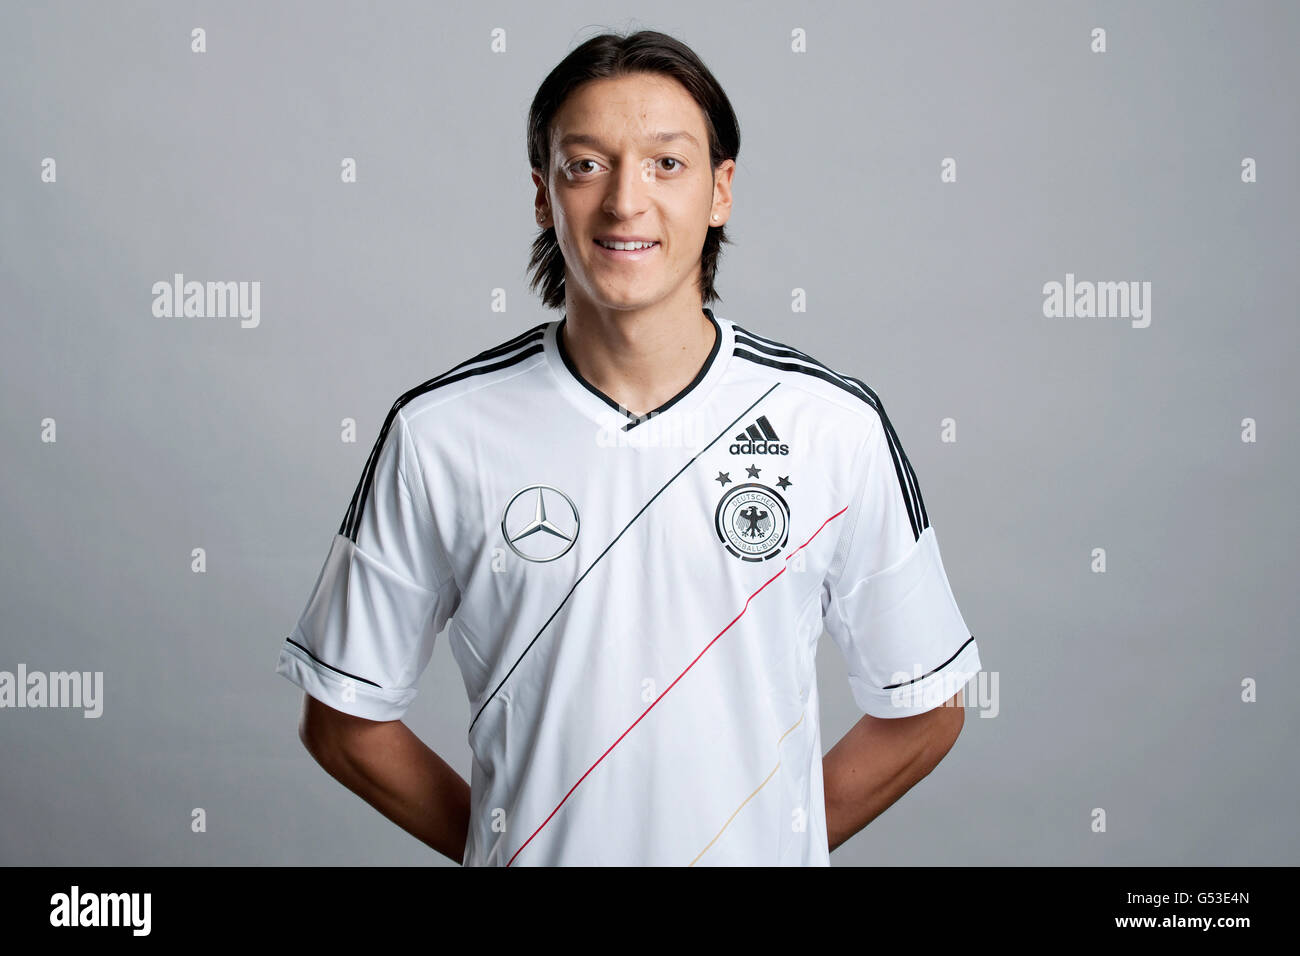 Mesut Oezil, sur le site officiel de portrait photo session de l'allemand, l'équipe nationale de football sur 14.11.2011, Hambourg Banque D'Images